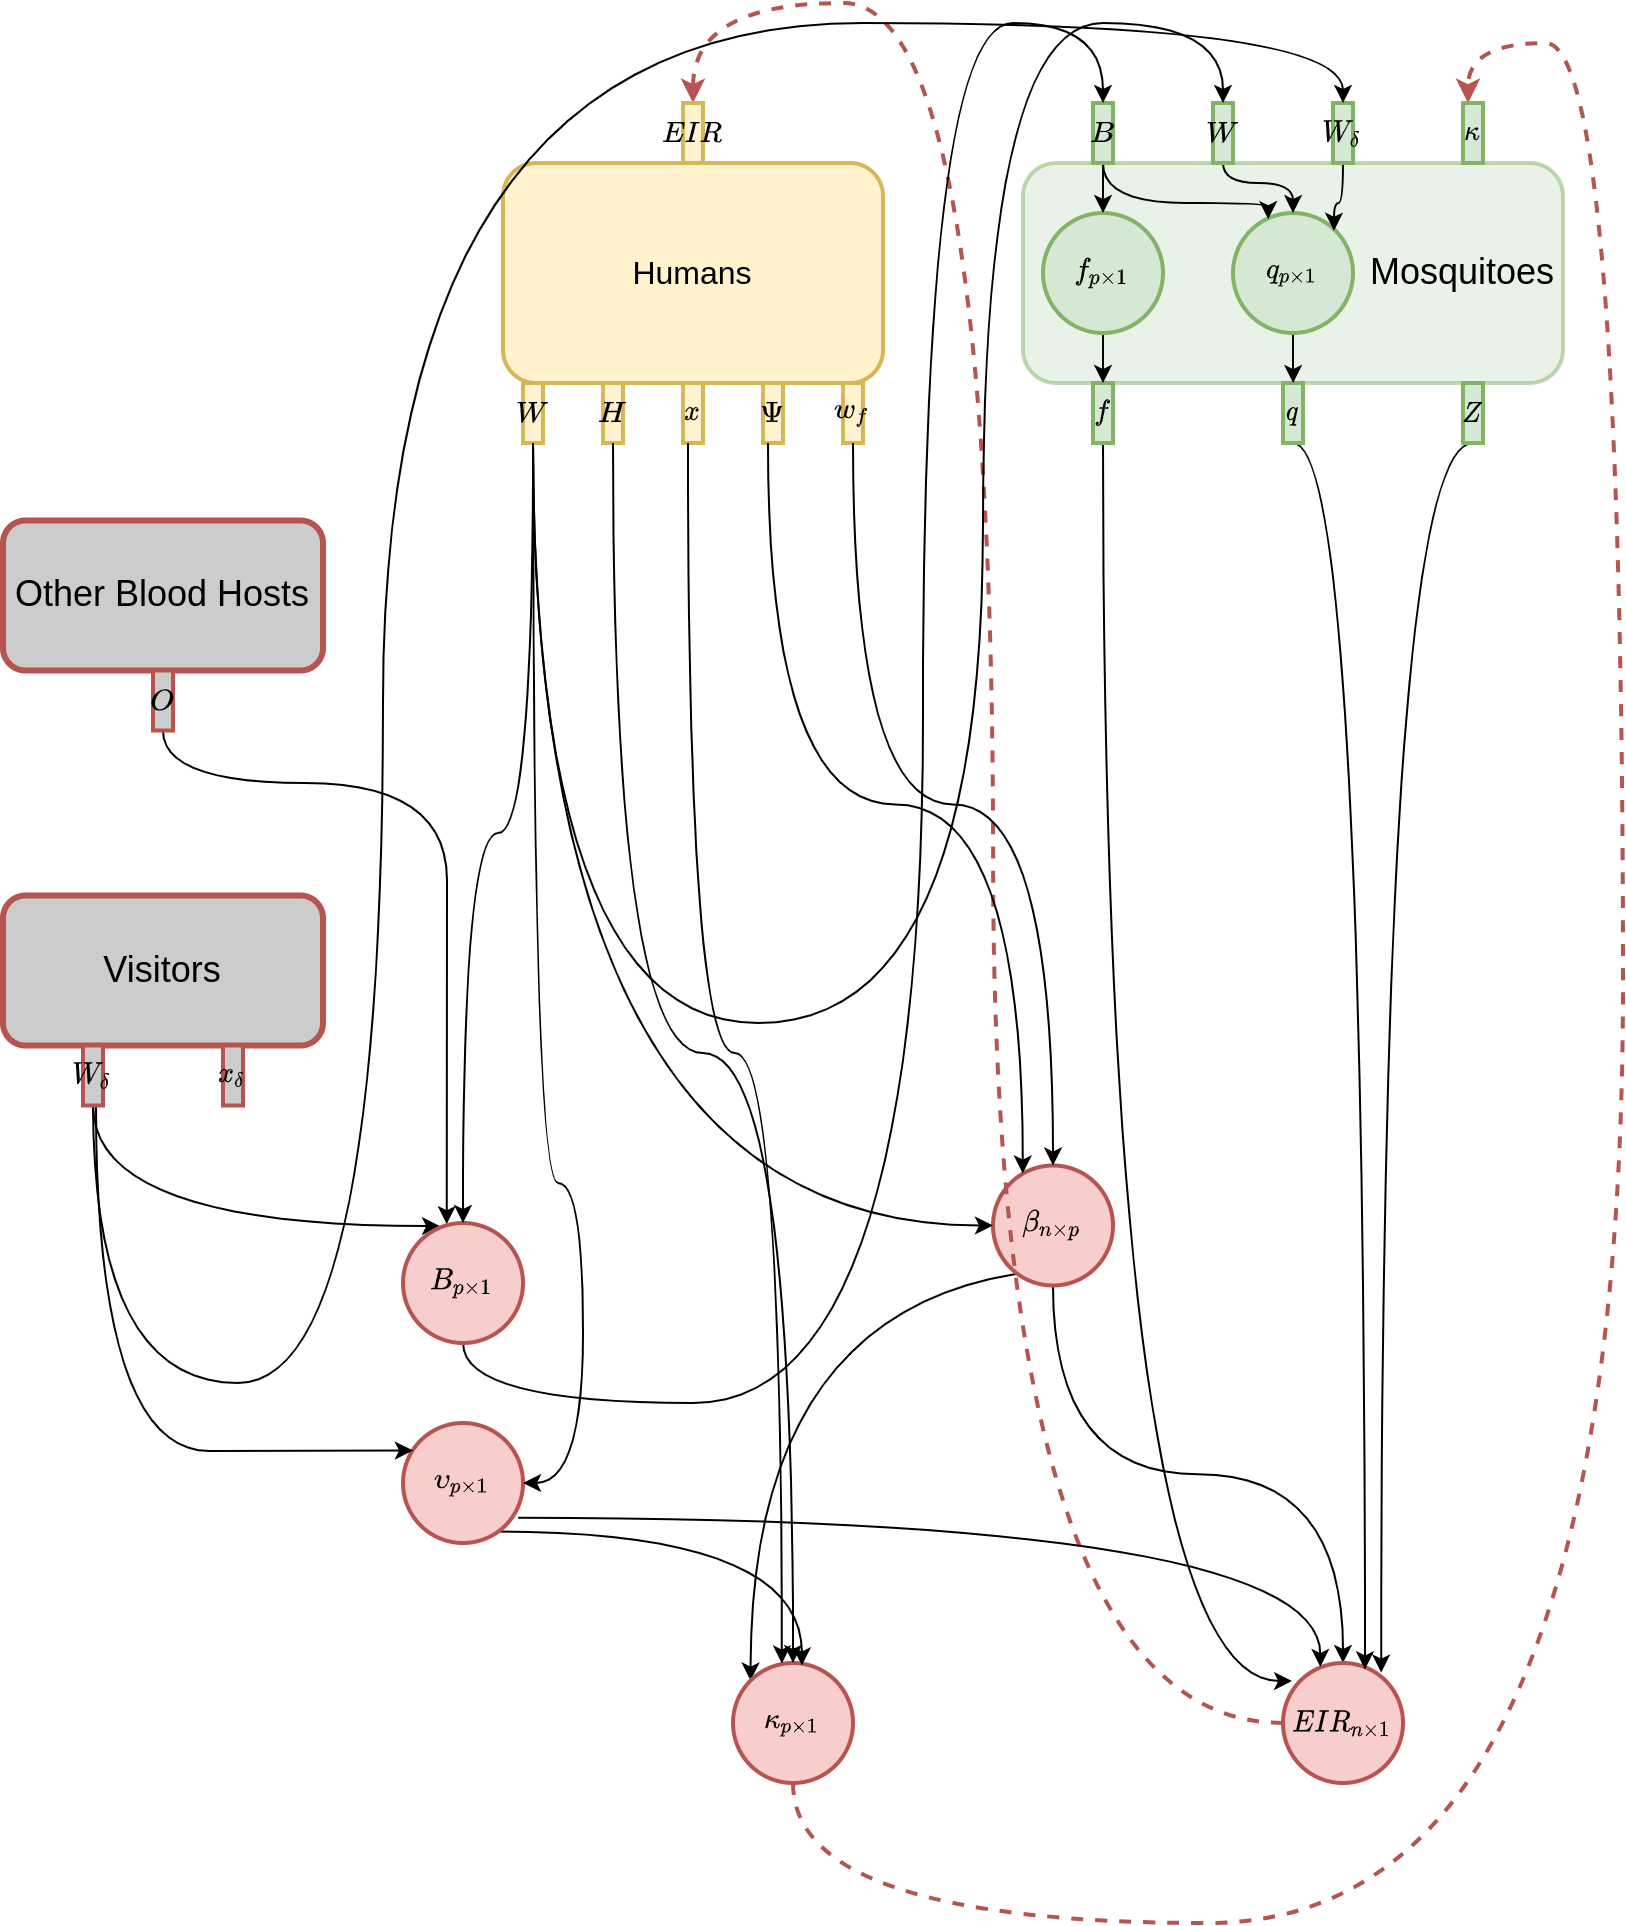 Wiring diagram for blood feeding computation